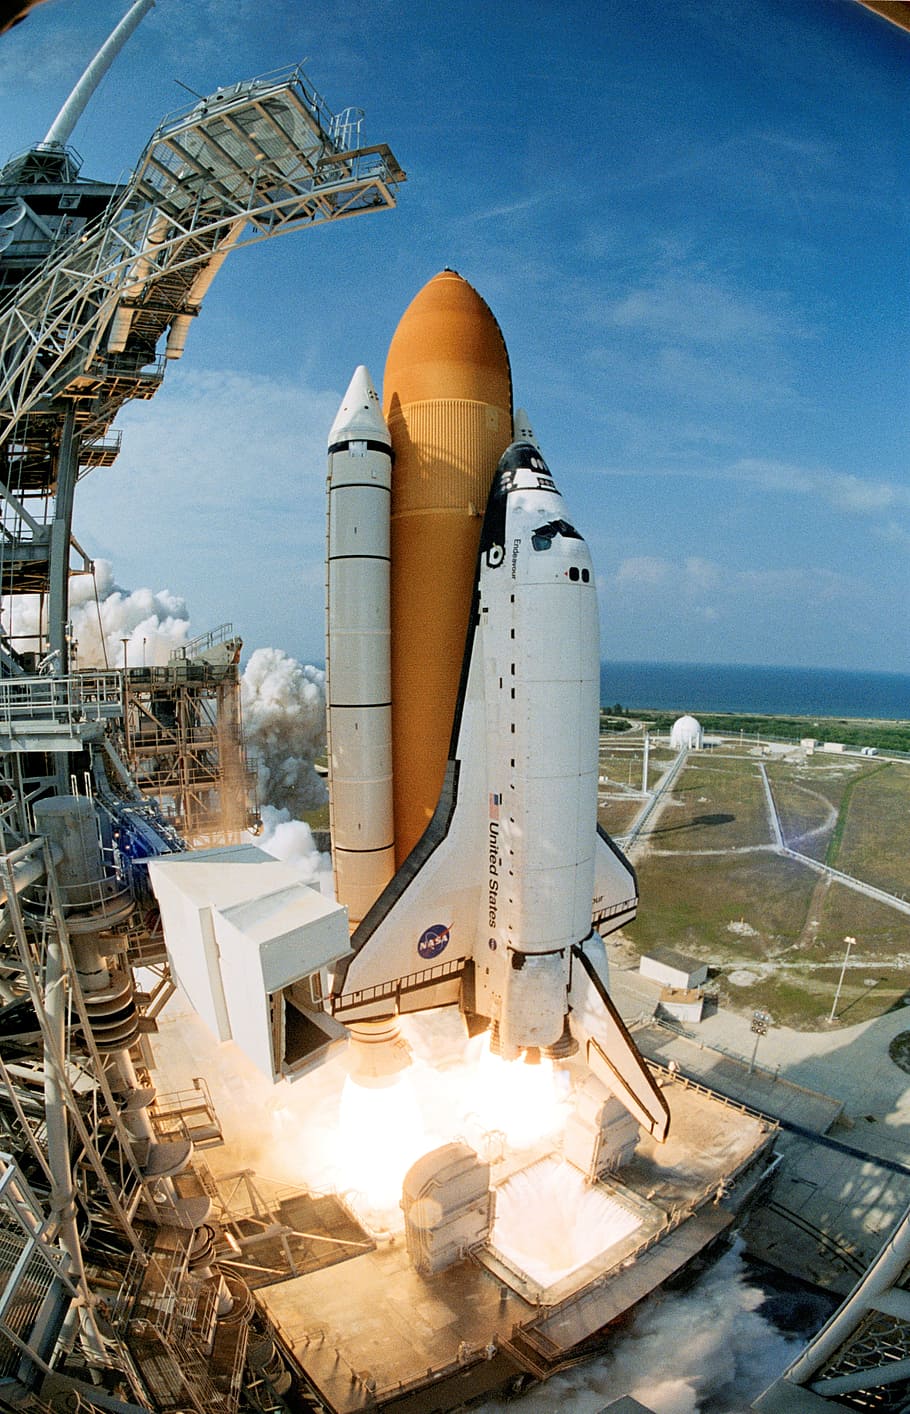 Pesawat ulang-alik, Peluncuran, Endeavour, peluncuran pesawat ulang-alik, pusat ruang angkasa kennedy, roket, pesawat ruang angkasa, industri, ruang, transportasi barang